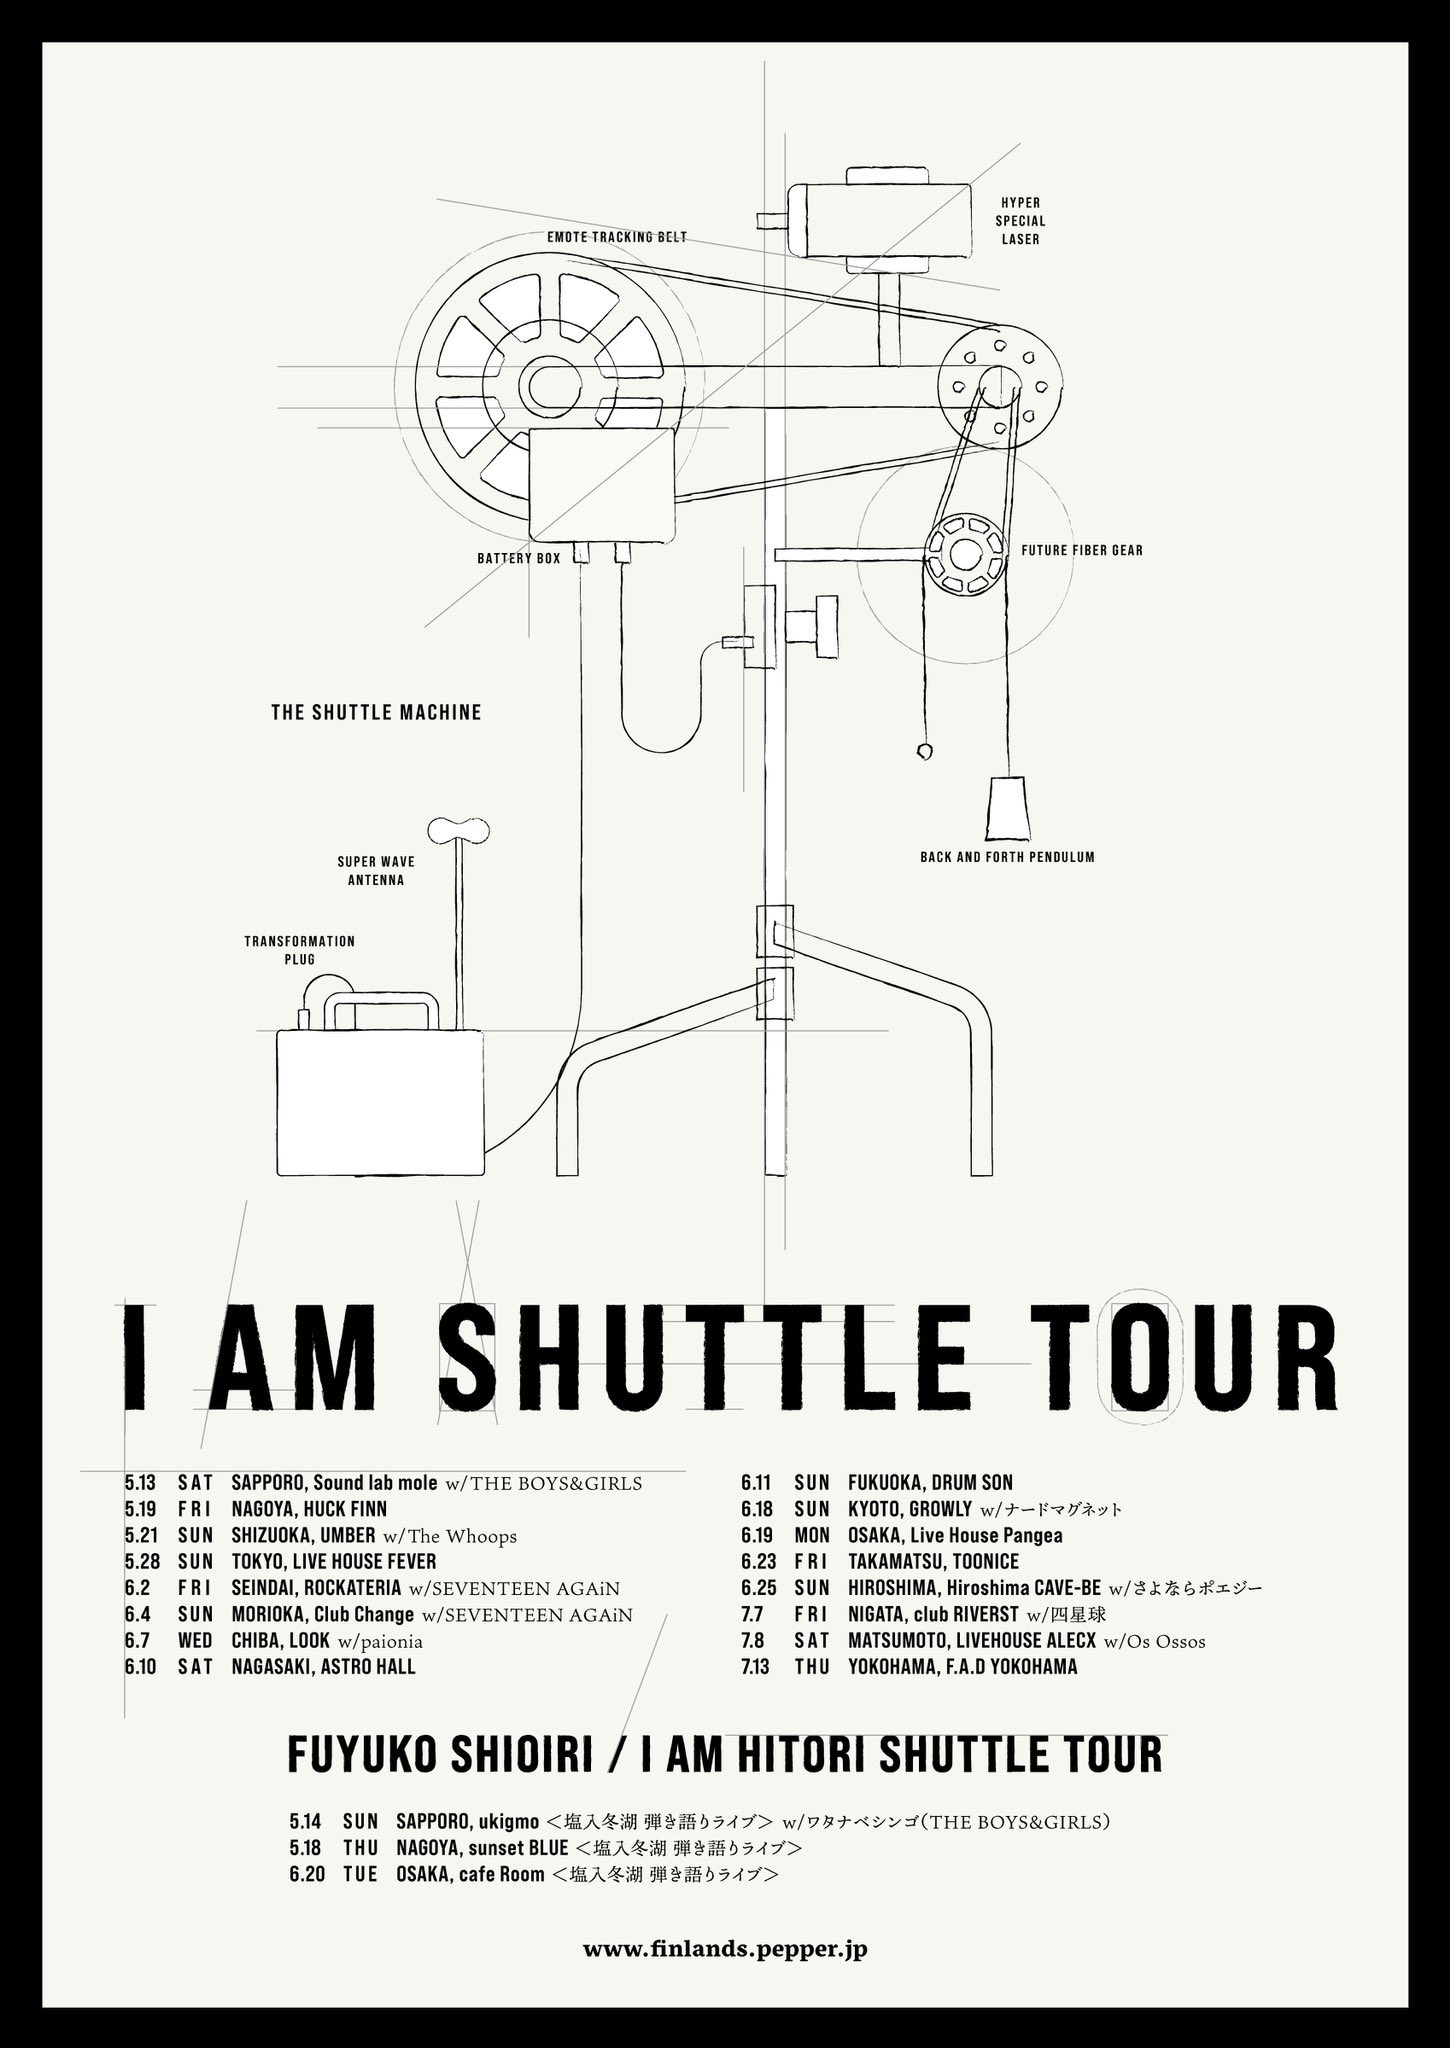 【振替公演】FINLANDS 「I AM SHUTTLE TOUR」